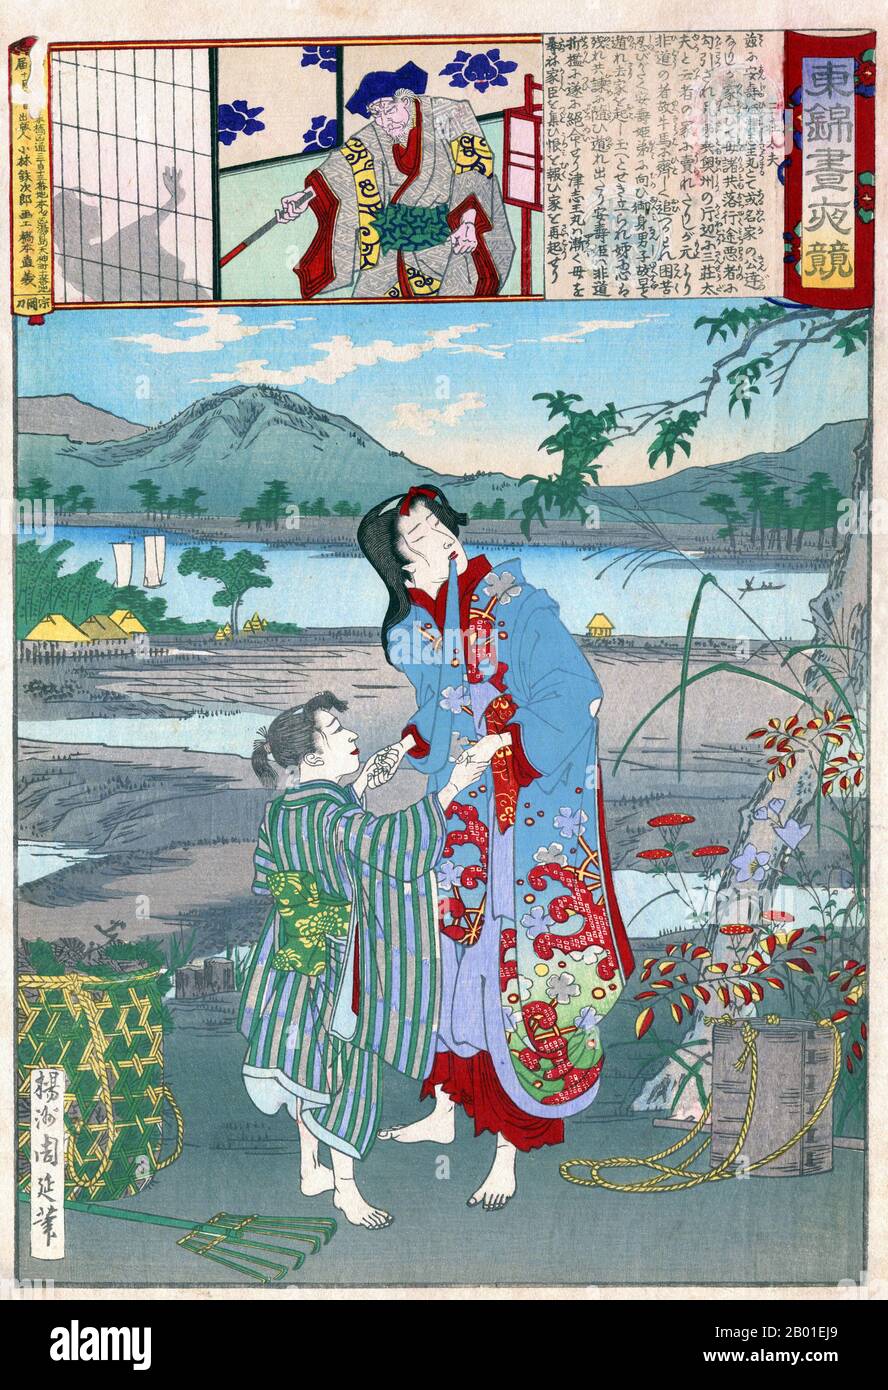 Japon: Yasu-hime et Zushiomaru se sont vendus en esclavage. Imprimé en blocs de bois Ukiyo-e de Yoshu Chikanobu (1838-1912), 1886. Sansho Daiyu vendu en esclavage Yasu-hime et Zushiomaru, la fille et le fils (montré ici) du gouverneur provincial Iwaka Masauji, qui avait été renversé et exilé. Tatebe Kanamenosuke, le fidèle reteneur d'Iwaka, a tenté de sauver les enfants, mais il a été lui-même capturé et condamné à mort, pour être décapité à l'aube. La fille de sansho, Osan, s'est transformée en volaille alors que le soleil se leva le jour de l'exécution et a mâché les cordes du prisonnier. Banque D'Images